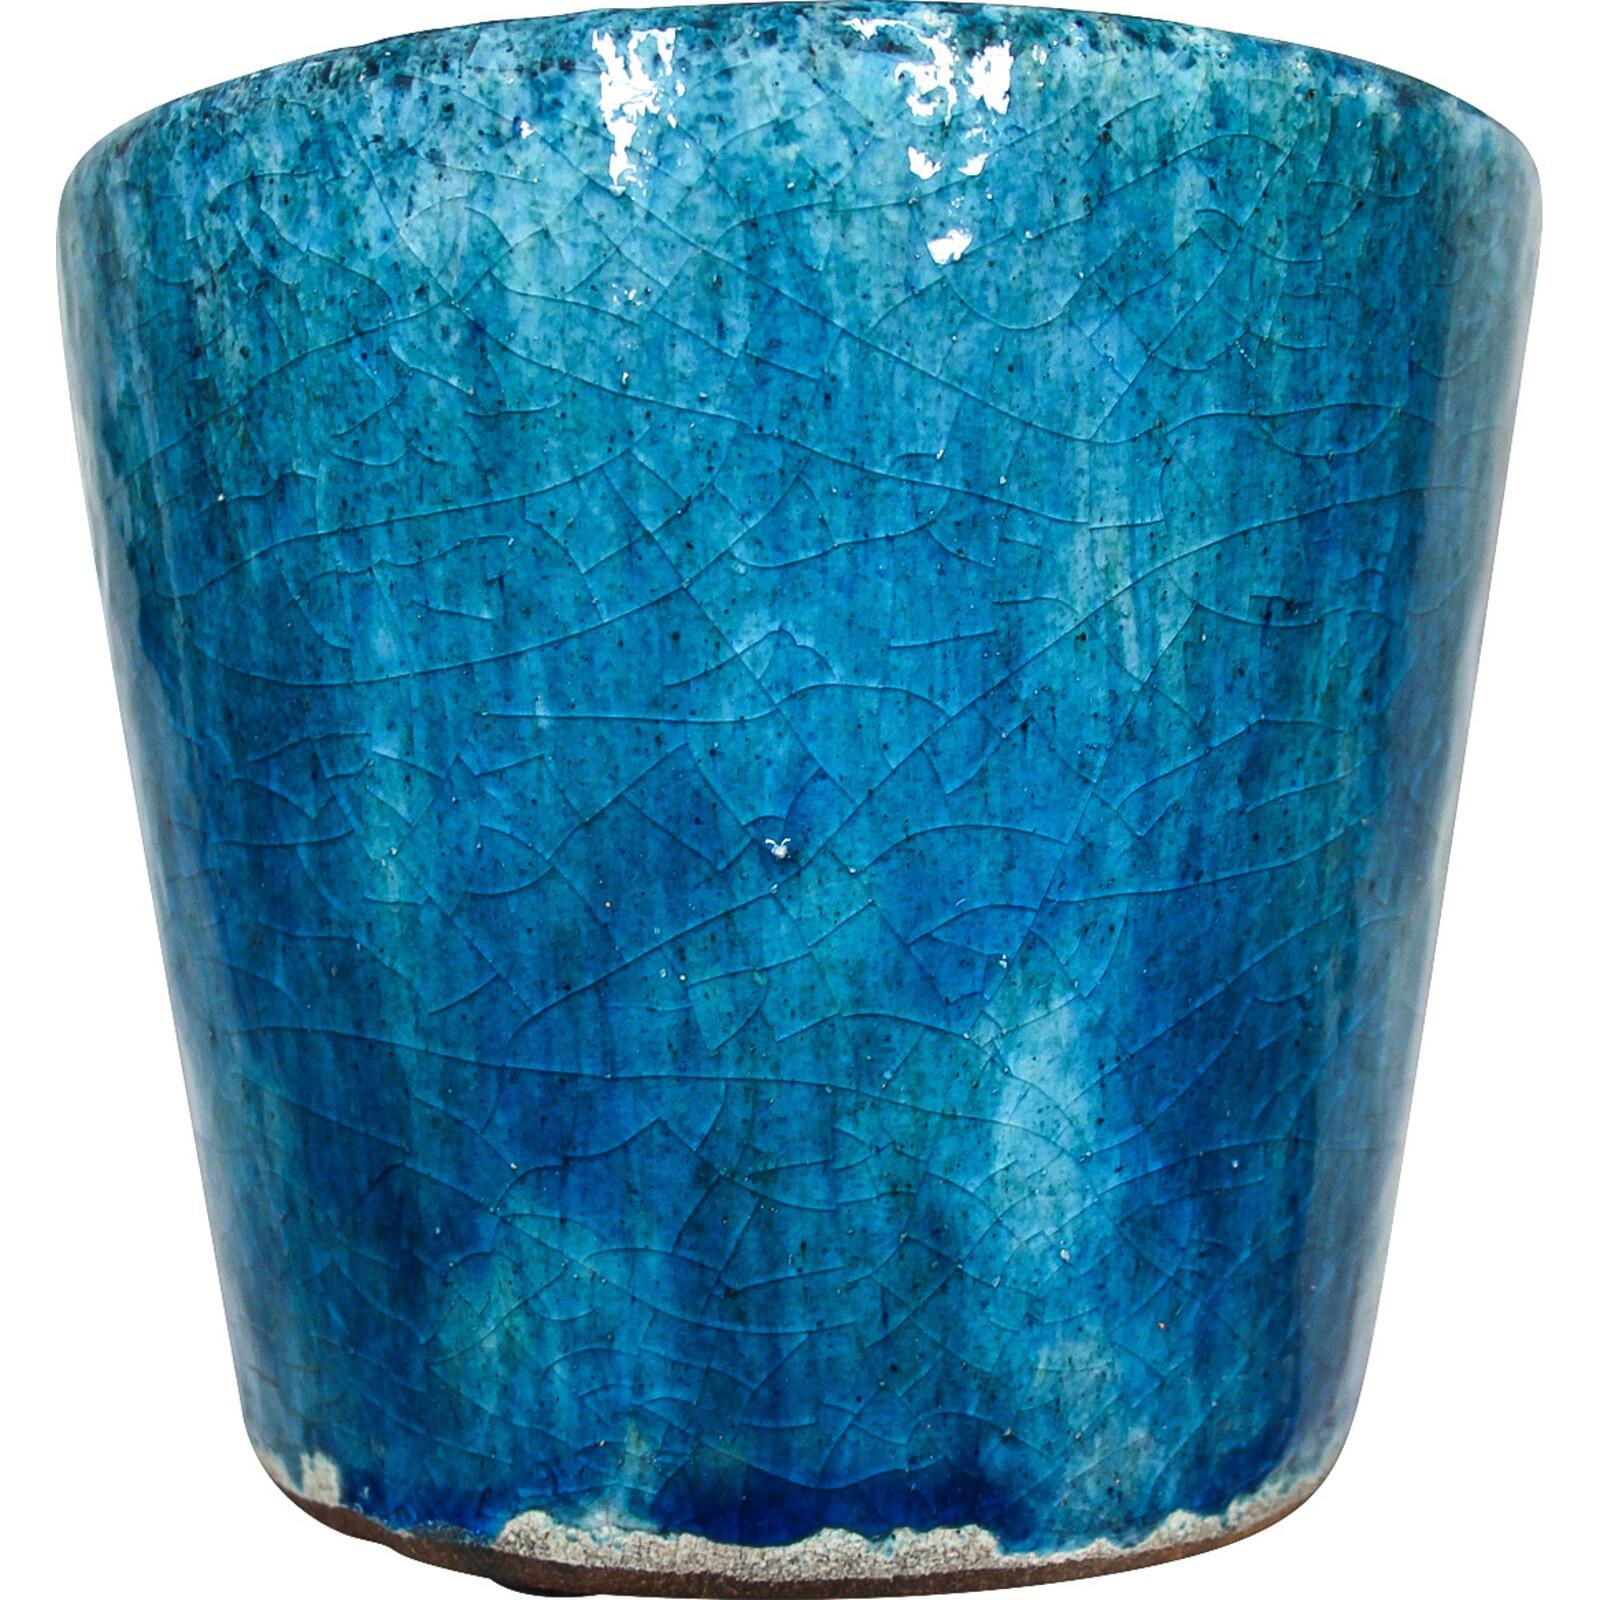 Pot Blue S/2